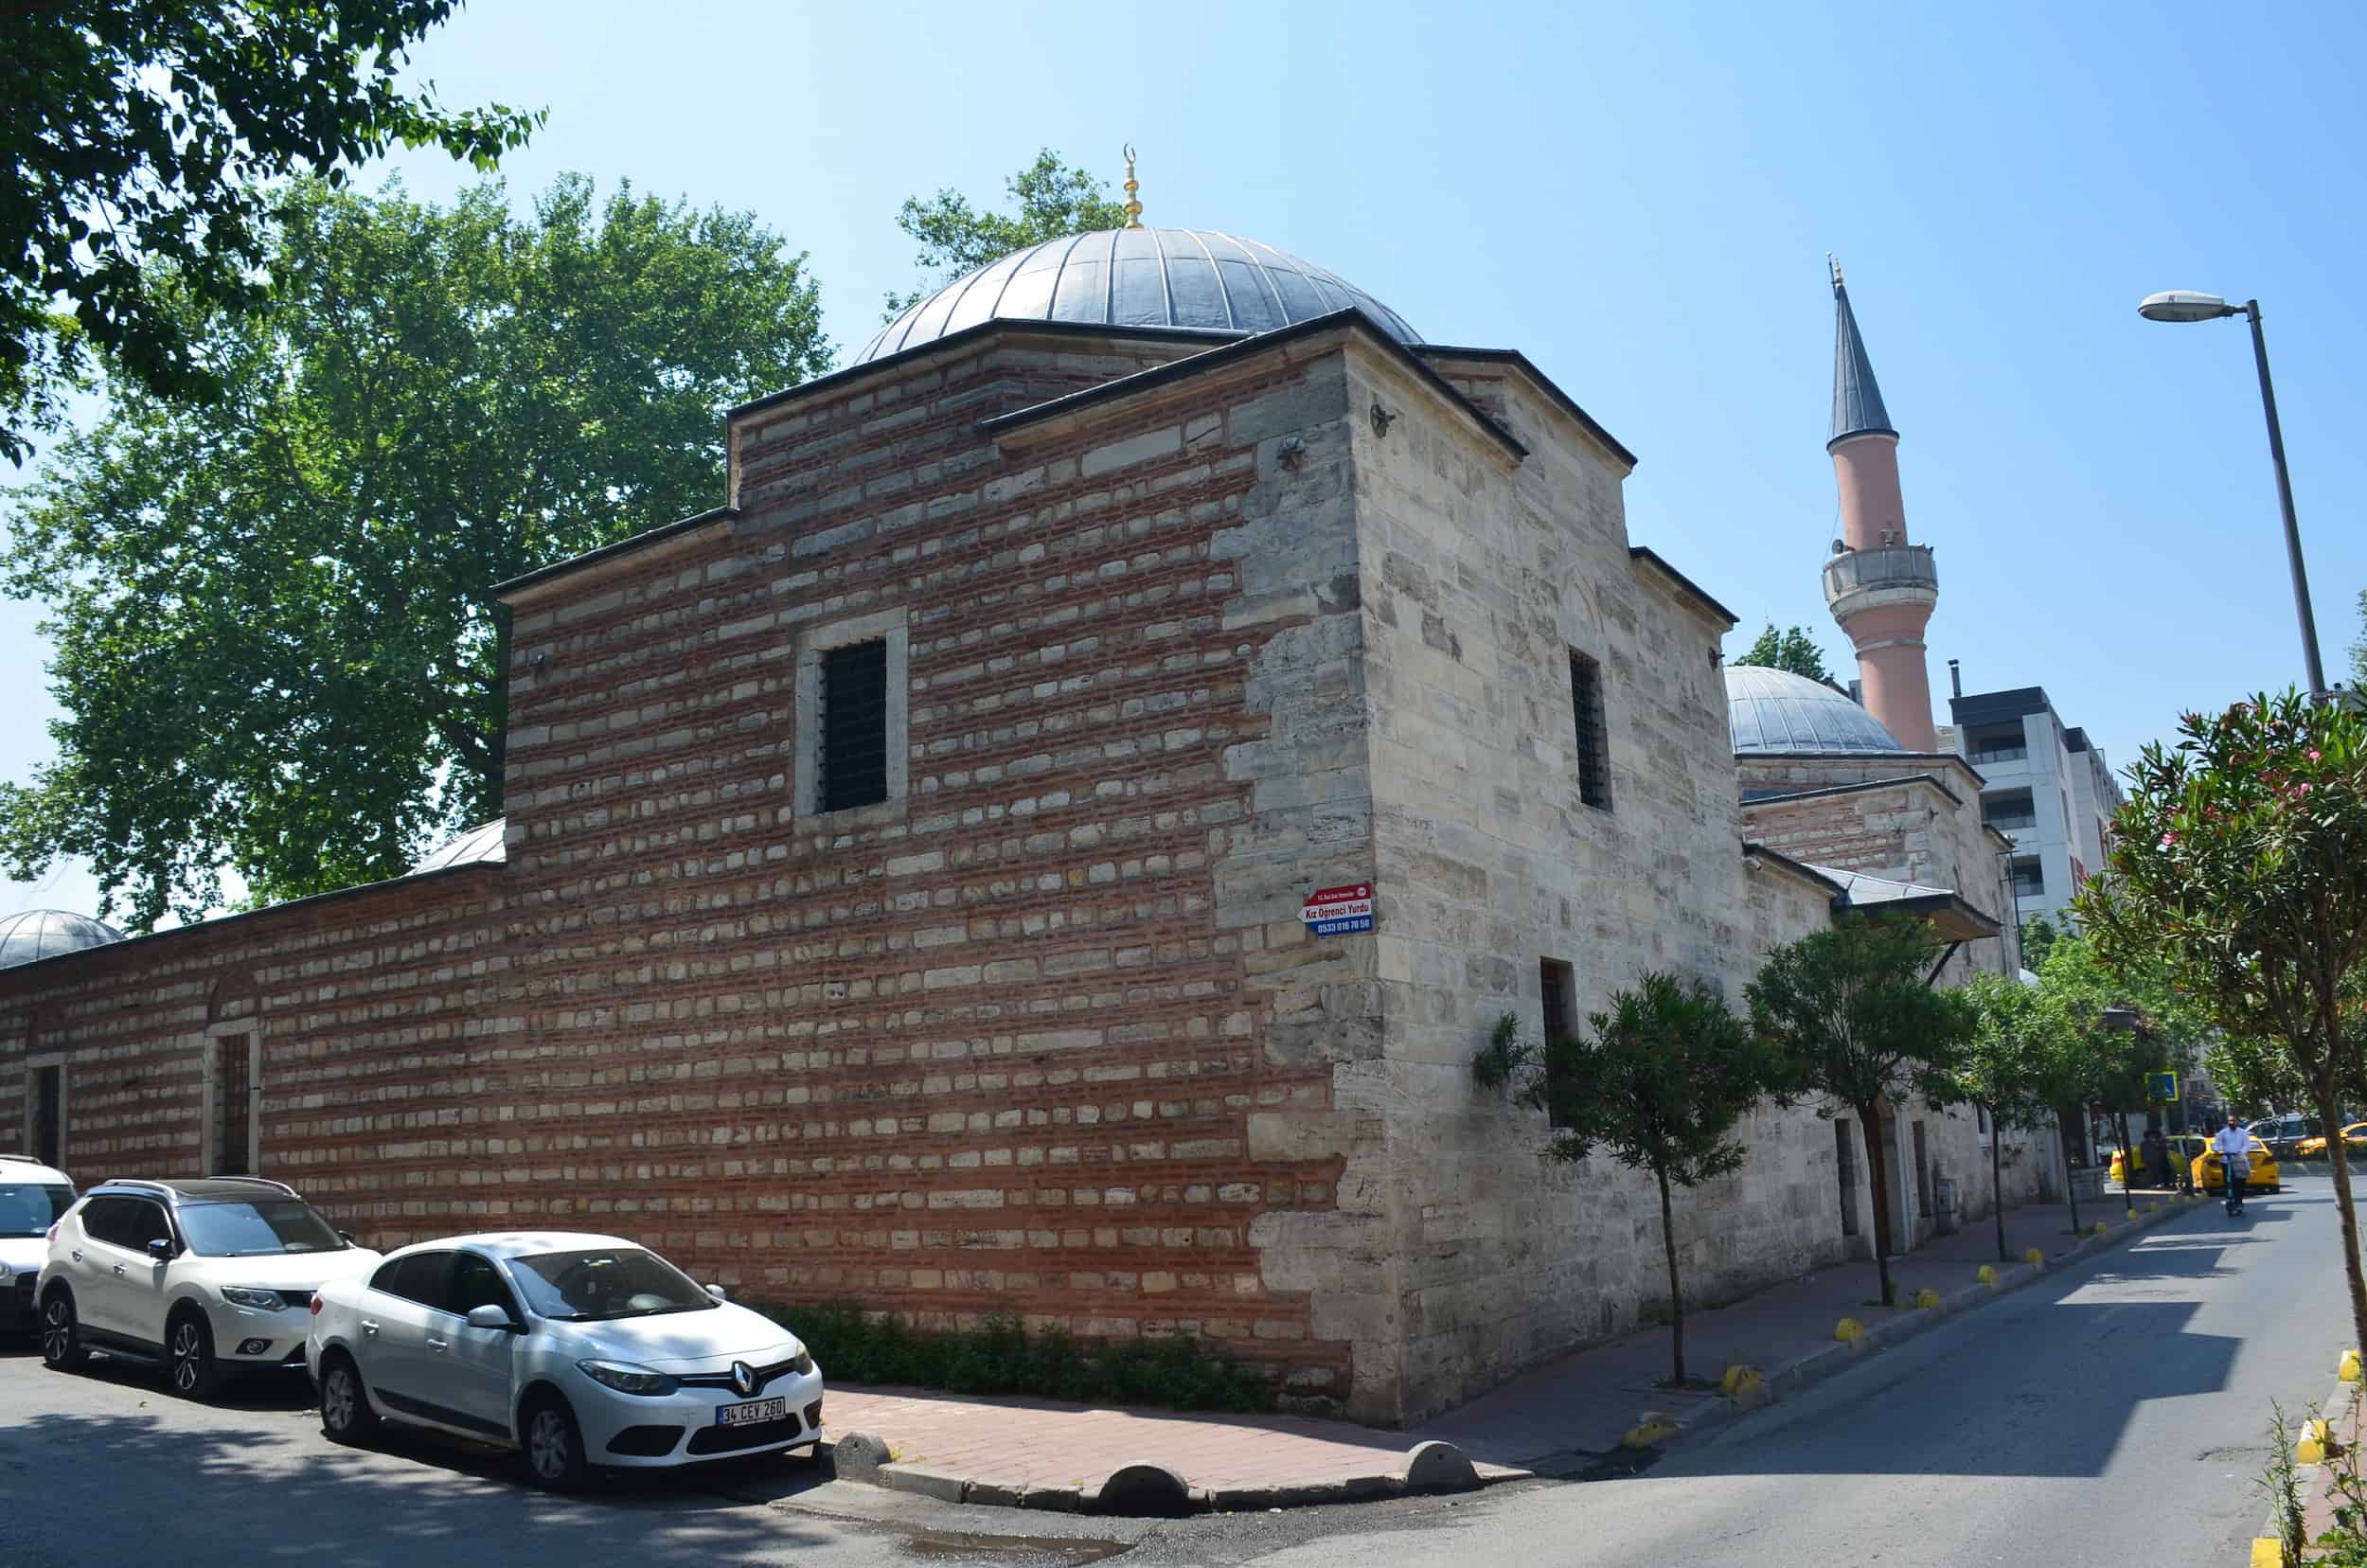 Damat Ibrahim Pasha Library in Şehzadebaşı, Istanbul, Turkey